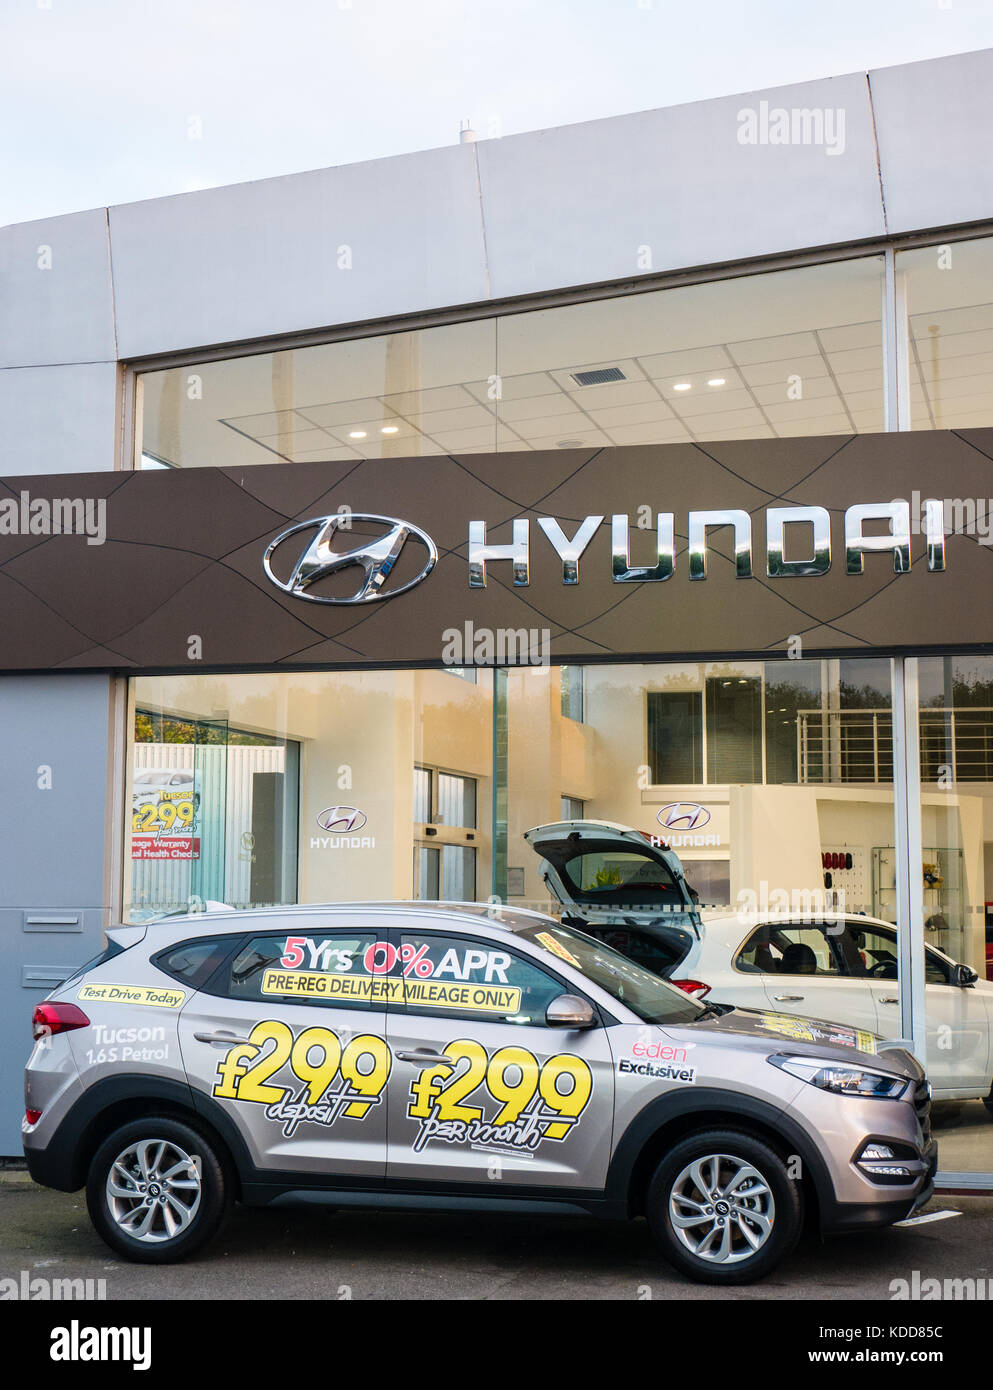 Hyundai Concesionario, Concesionario de coches, Reading, Berkshire, Inglaterra, Reino Unido, GB. Foto de stock